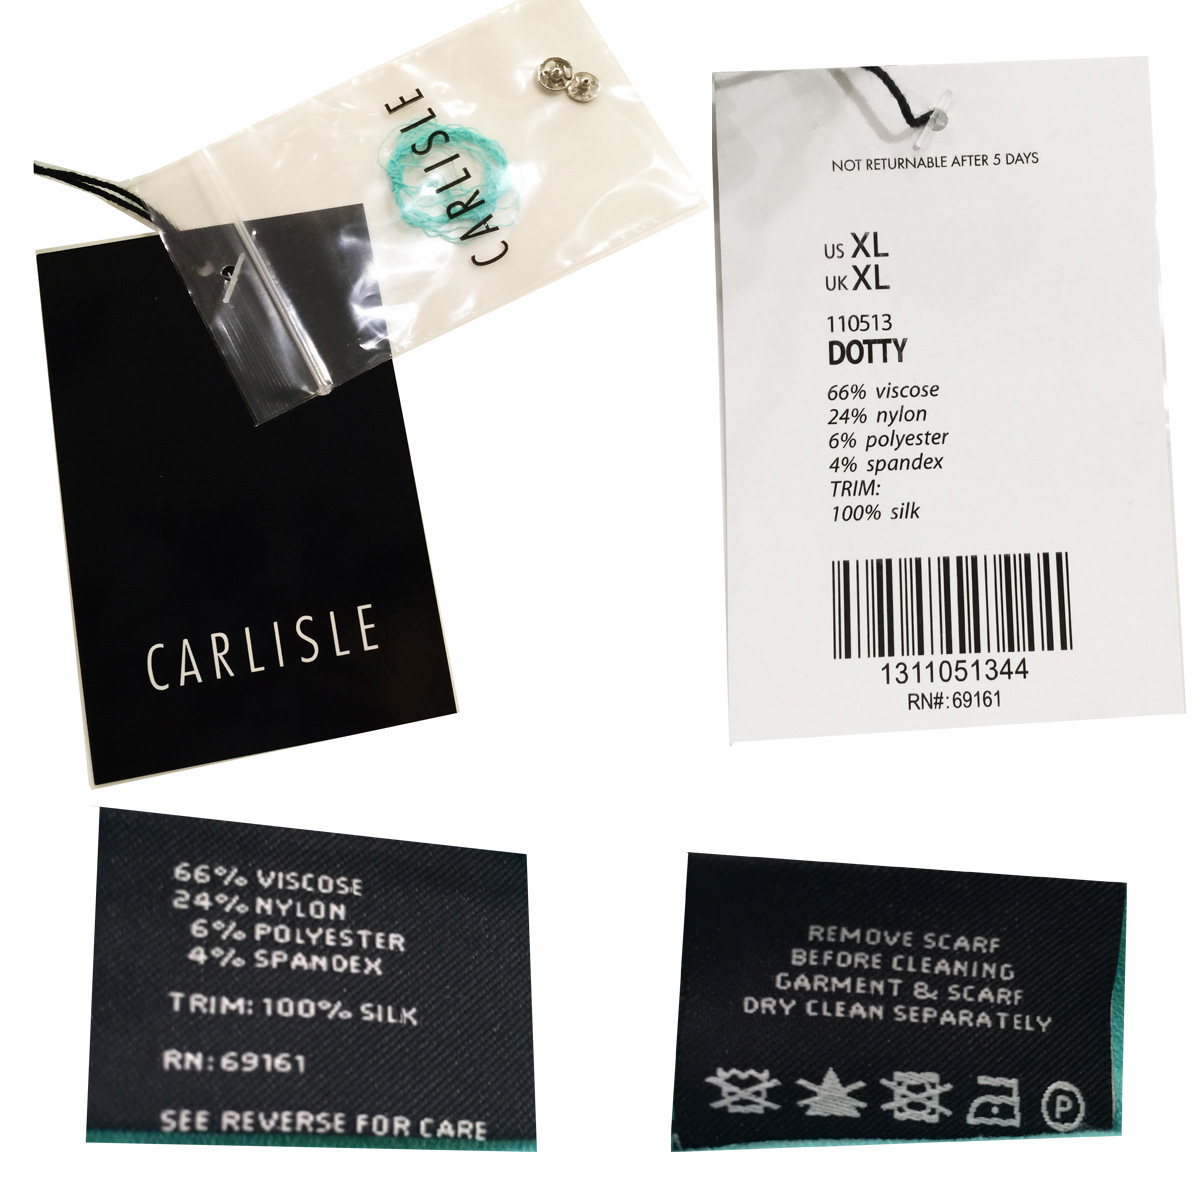 carlisle labels